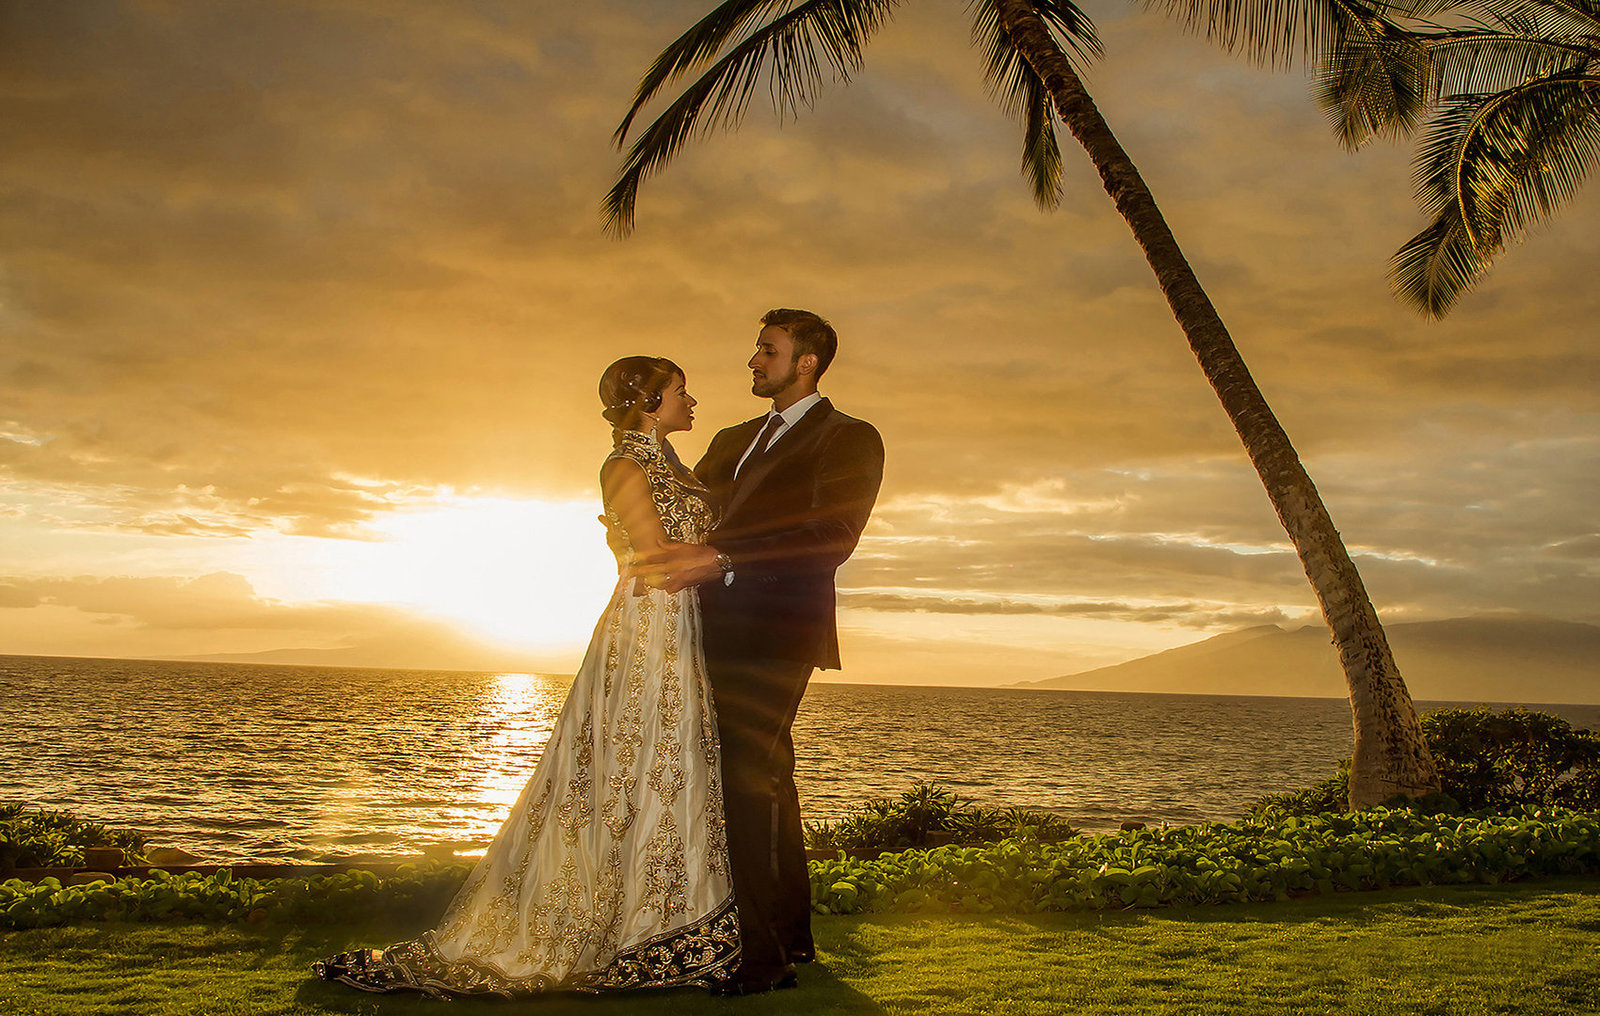 Waikiki couples portraits